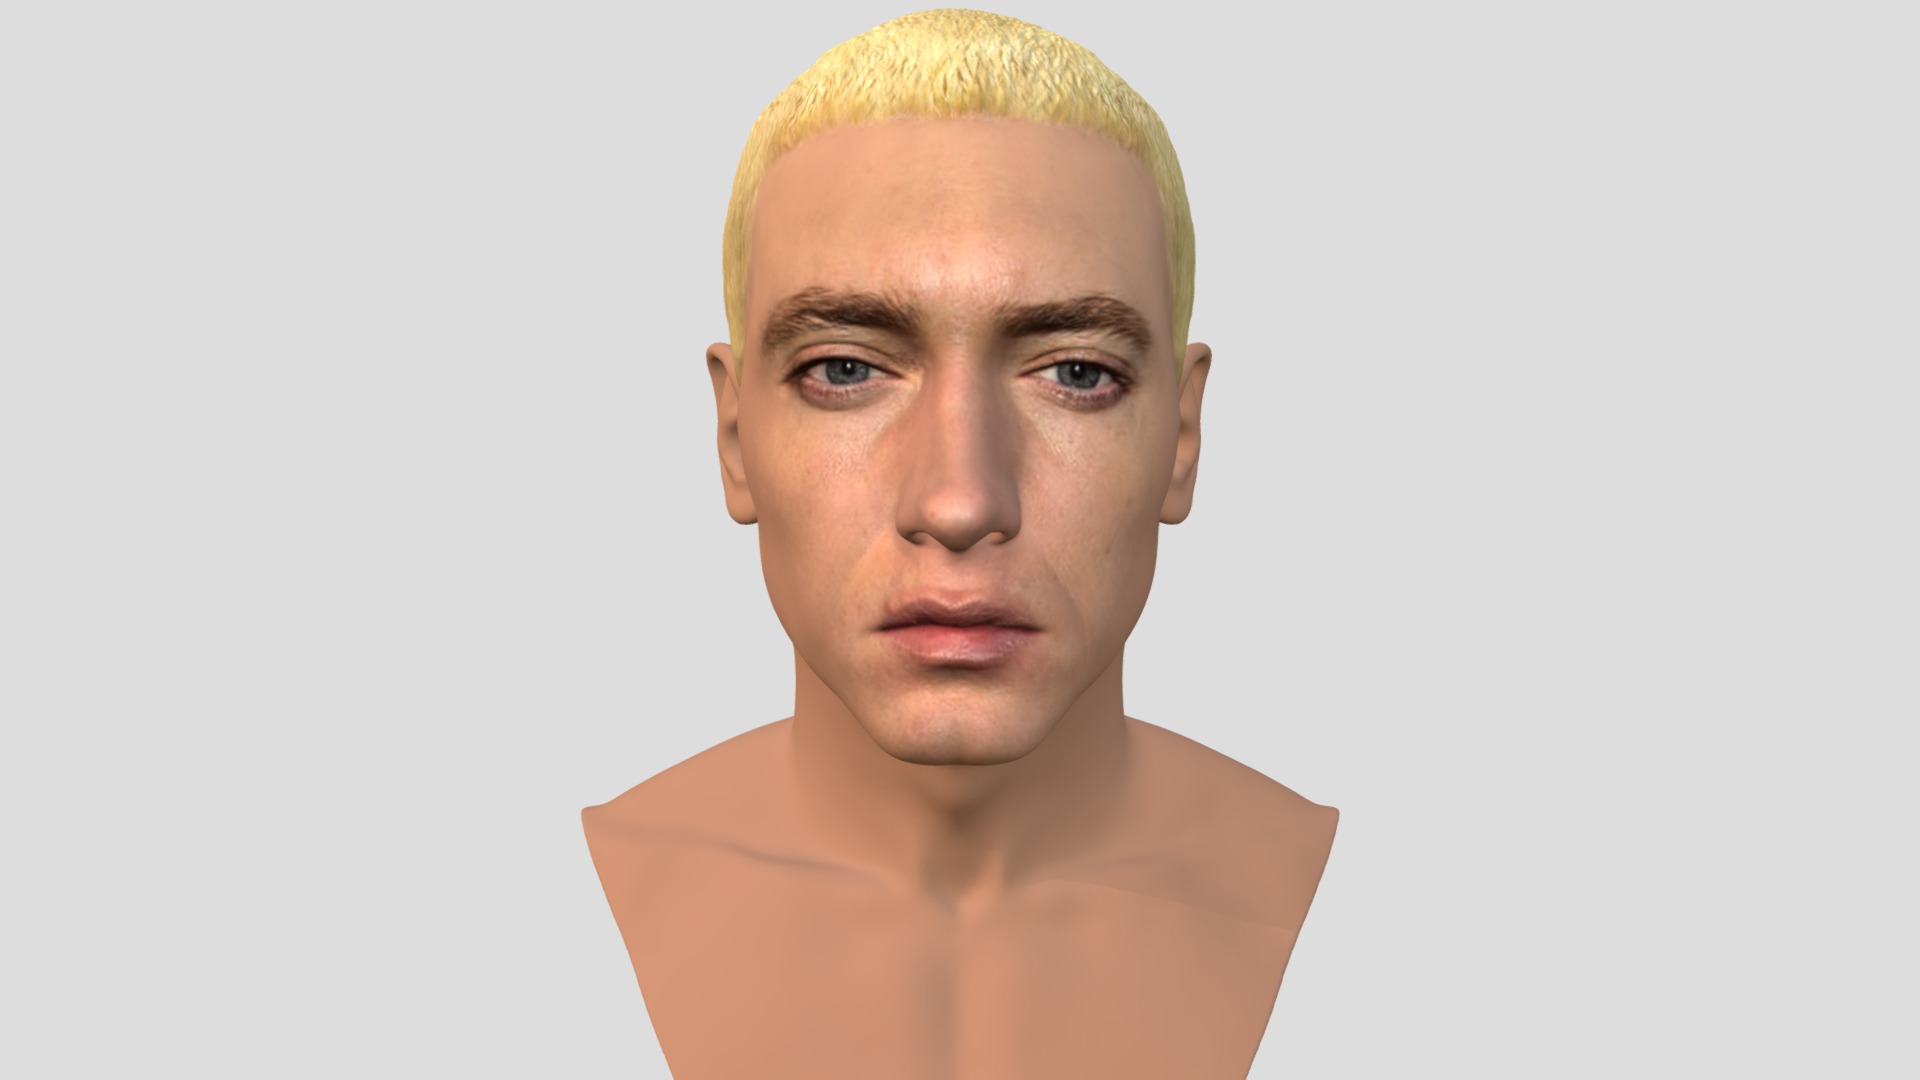 3D model Eminem bust for full color 3D printing - This is a 3D model of the Eminem bust for full color 3D printing. The 3D model is about a person with a bald head.